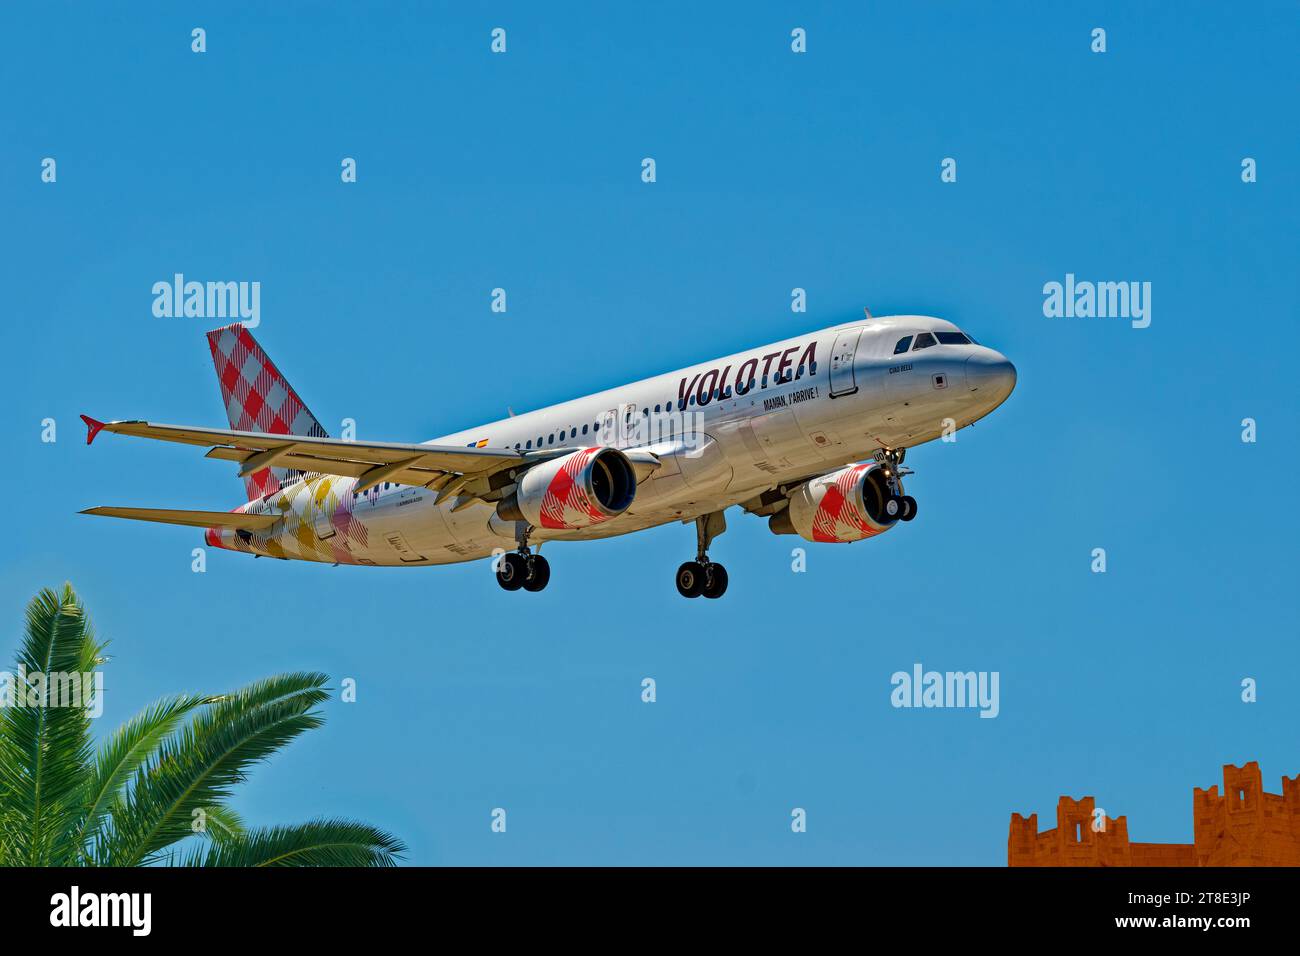 Volotea avion de ligne économique espagnol Airbus A320-200 atterrissage. Banque D'Images